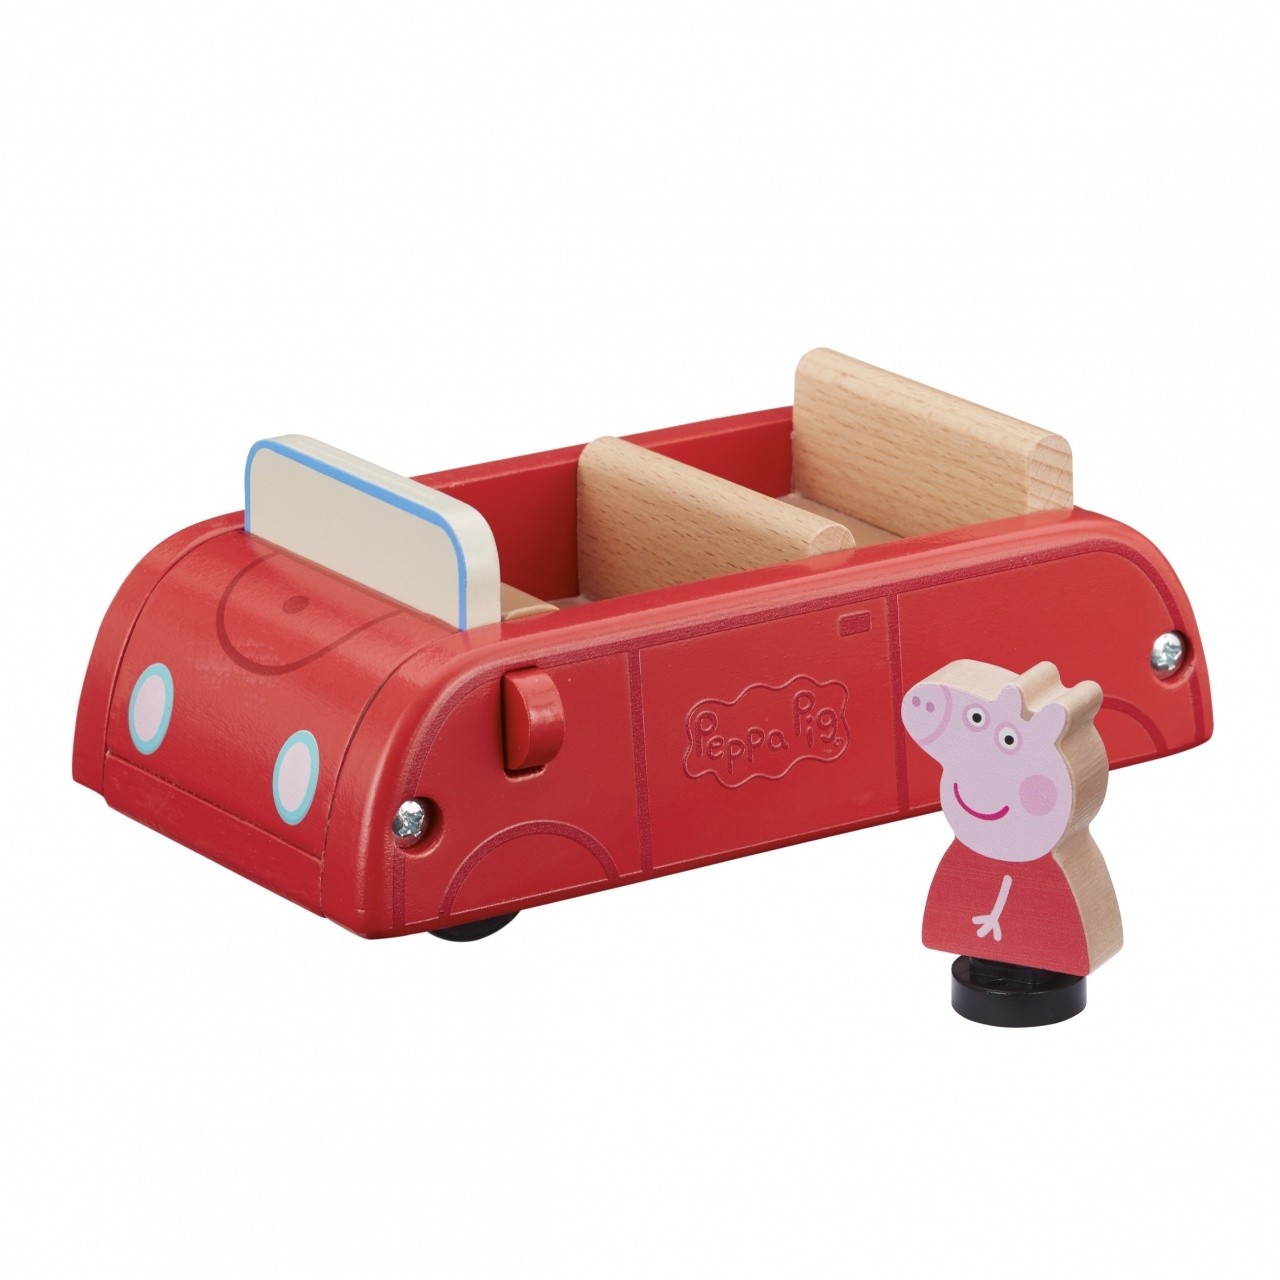 Peppa Pig PPC63 veicolo giocattolo